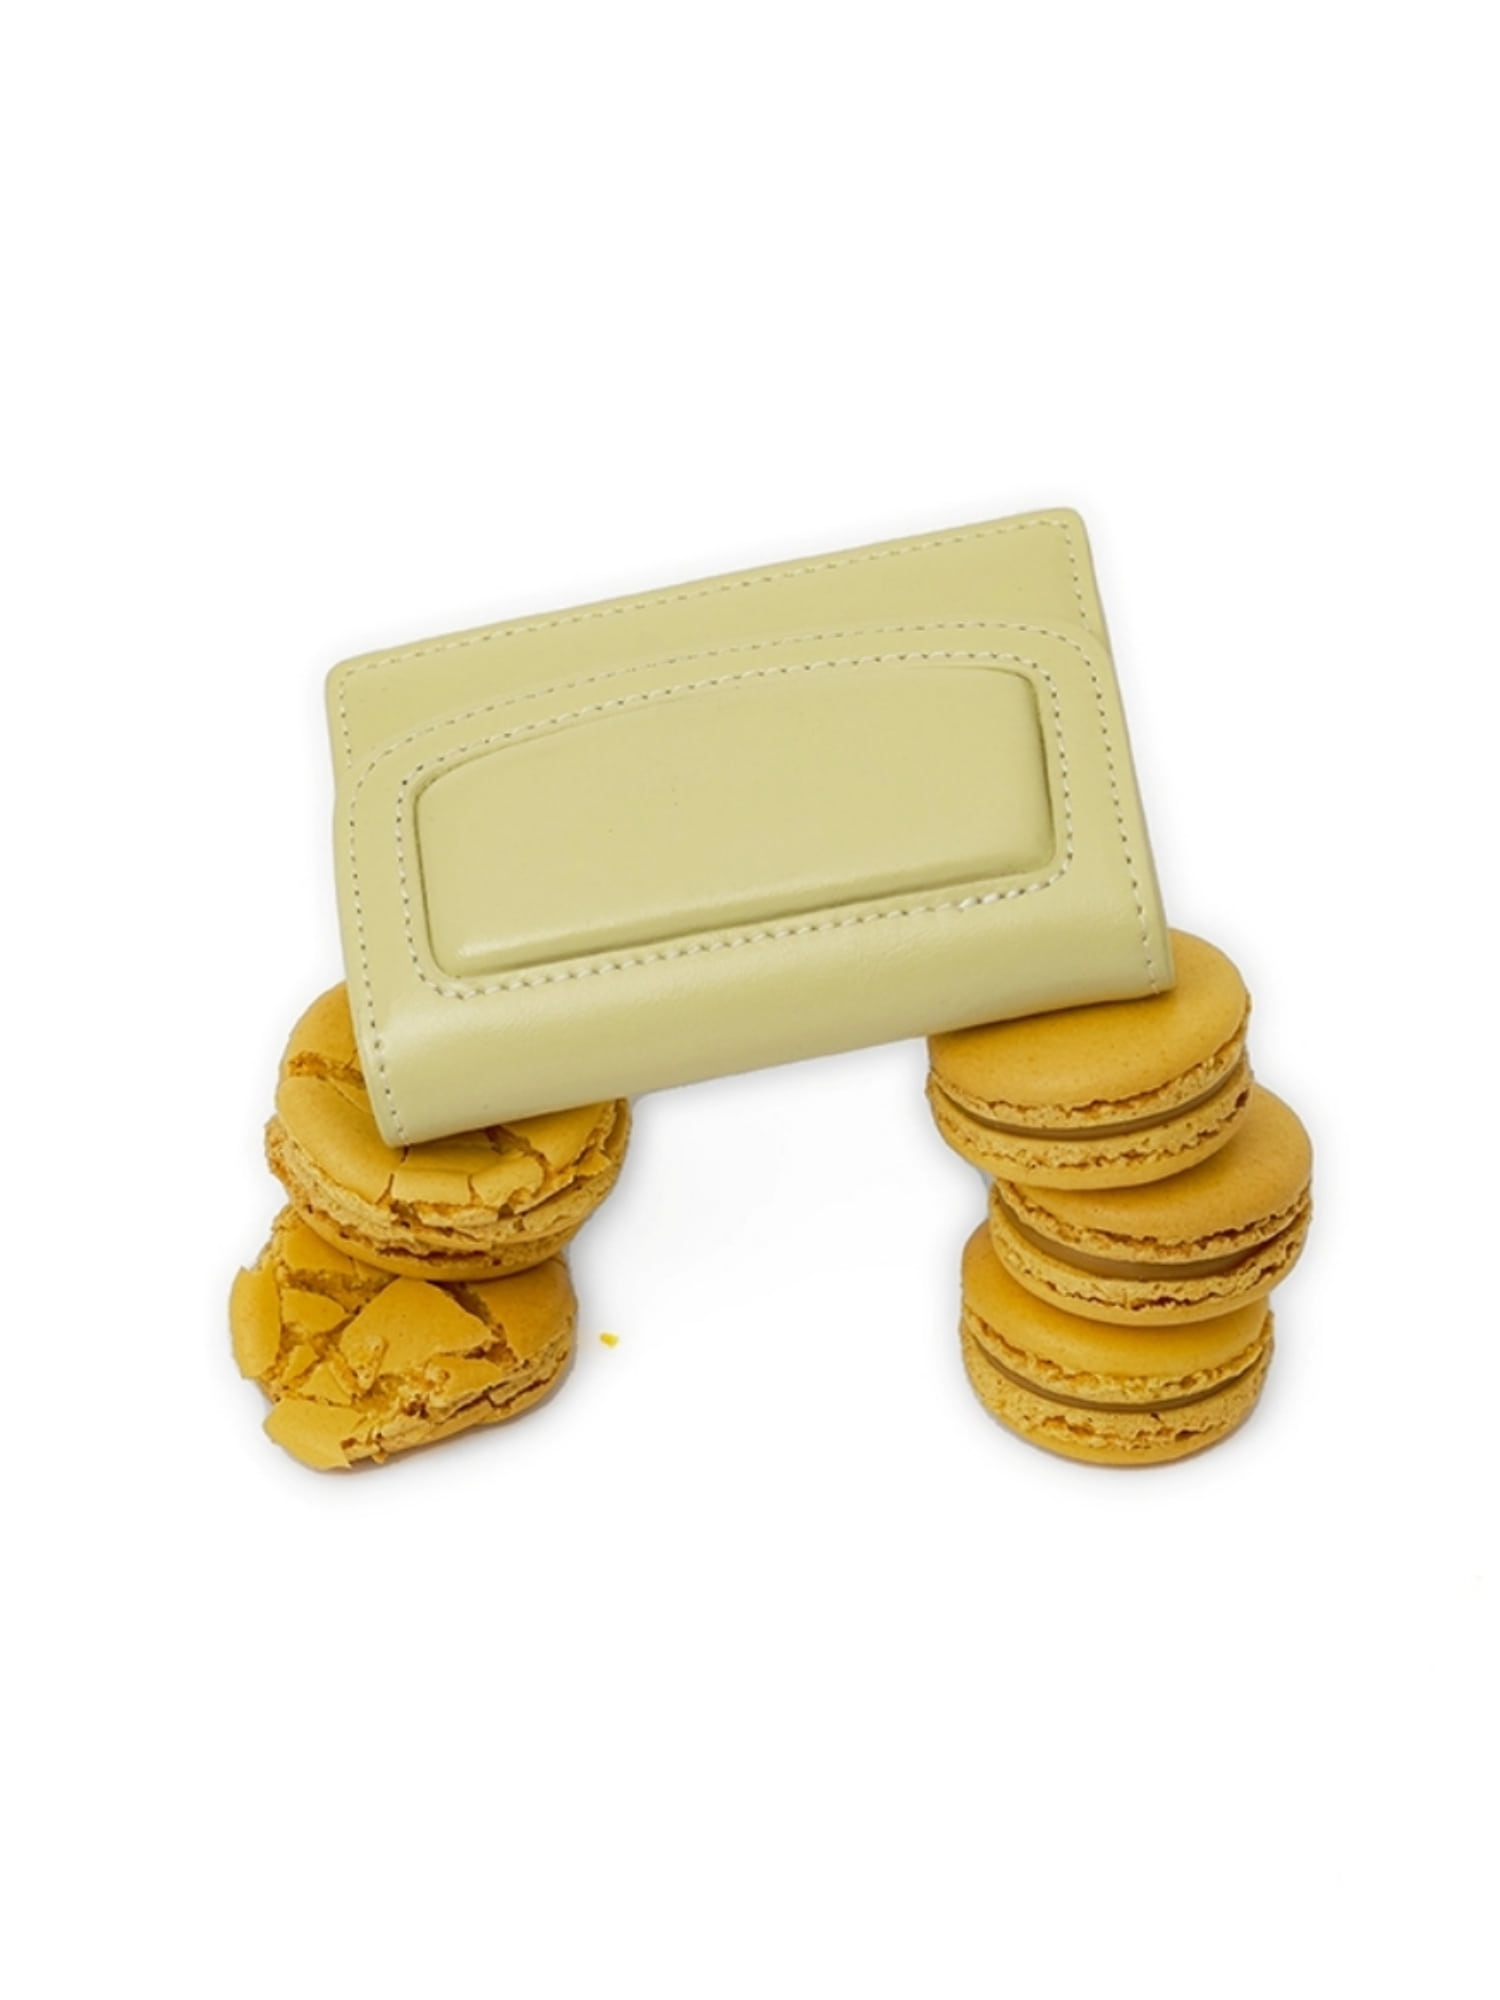 PALETTE Leather Card Case Wallet - Pale Lemon